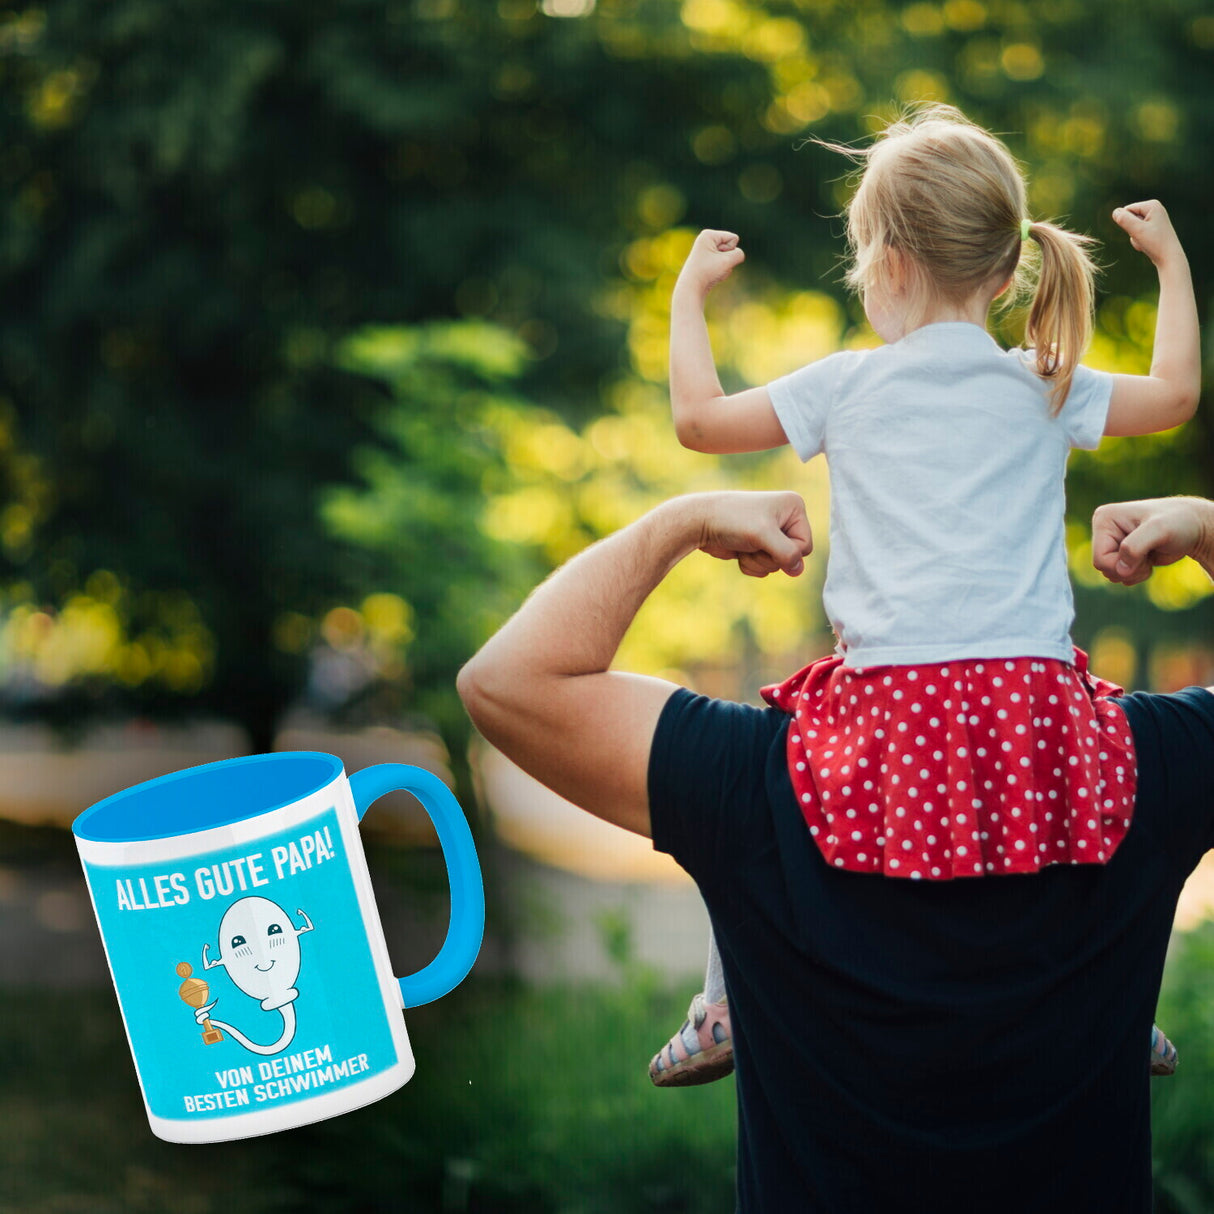 Alles gute Papa von deinem besten Schwimmer Kaffeebecher zum Vatertag